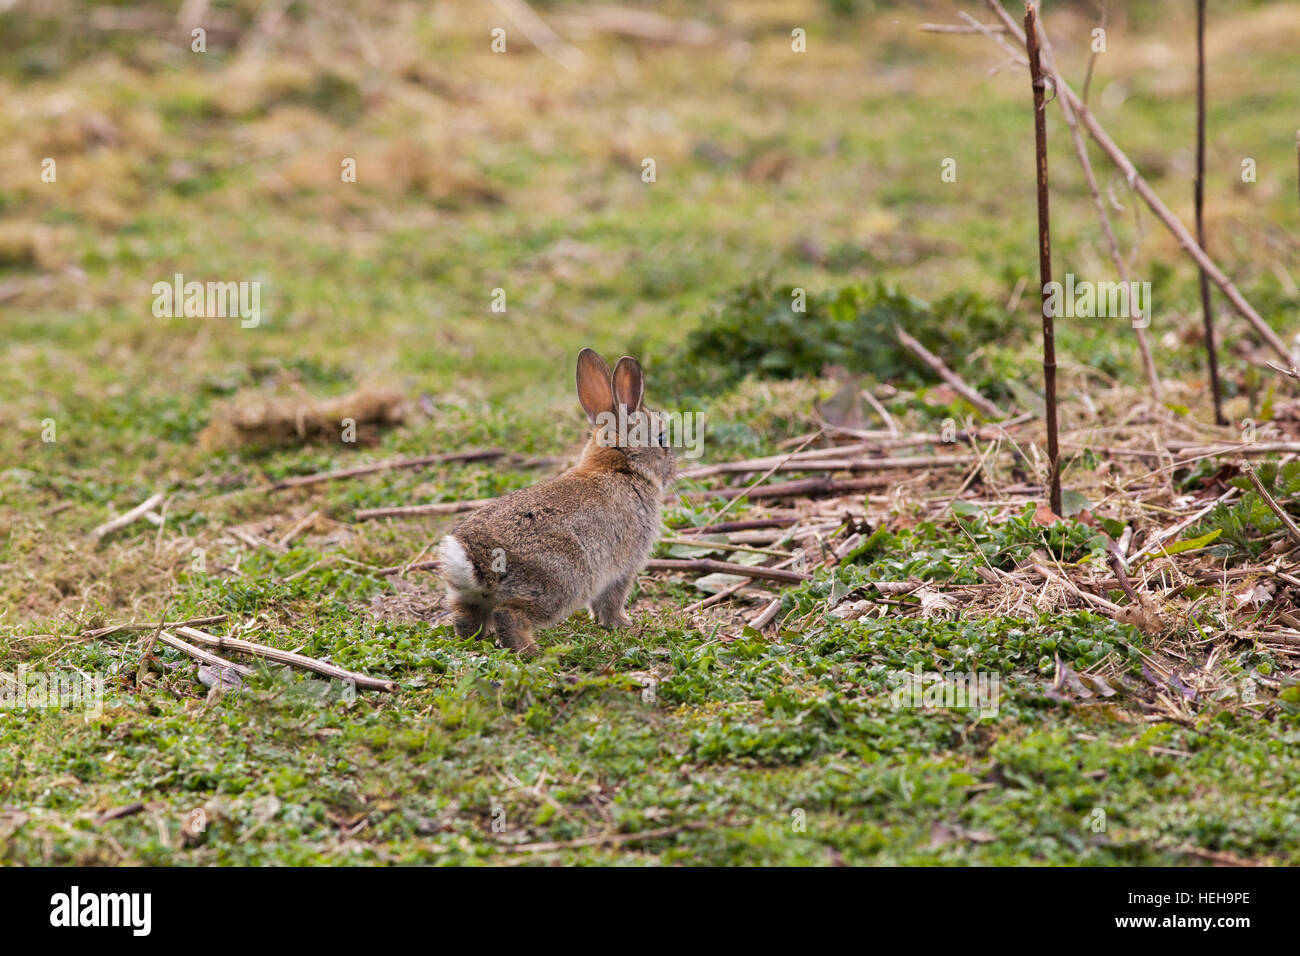 Europäischen Kaninchen (Oryctolagus Cuniculus). Lerted auf wahrgenommene mögliche Gefahr. Aus Sicht nach hinten angehoben Hinweis weißen Scut oder Schweif, wieder Fuß zu pochen Stockfoto